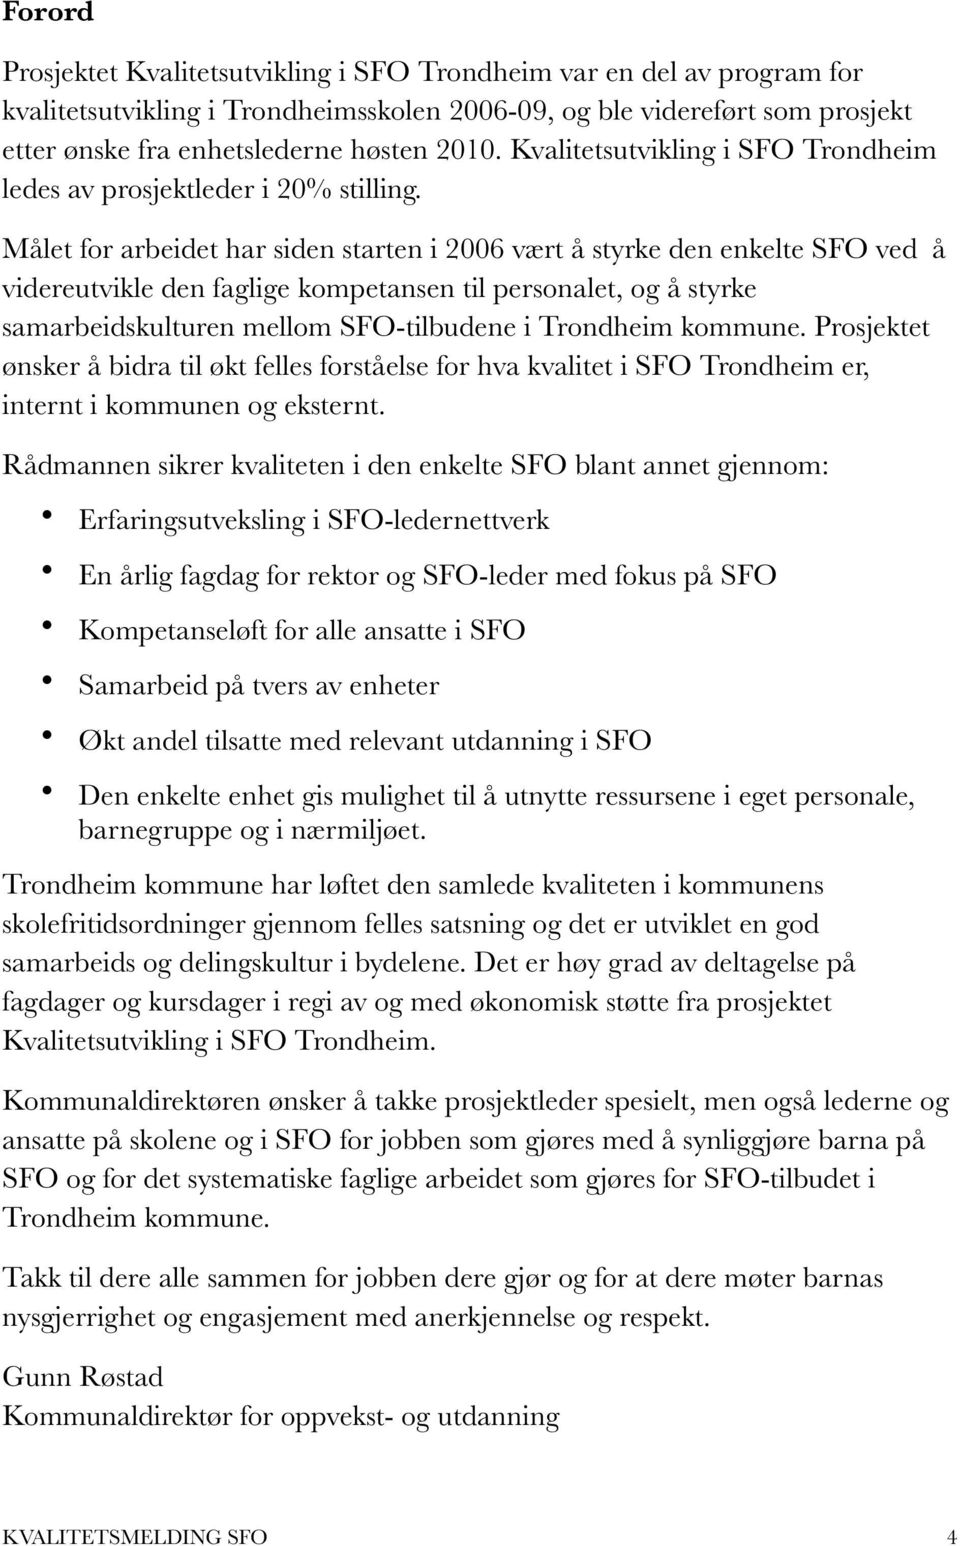 Målet for arbeidet har siden starten i 2006 vært å styrke den enkelte SFO ved å videreutvikle den faglige kompetansen til personalet, og å styrke samarbeidskulturen mellom SFO-tilbudene i Trondheim